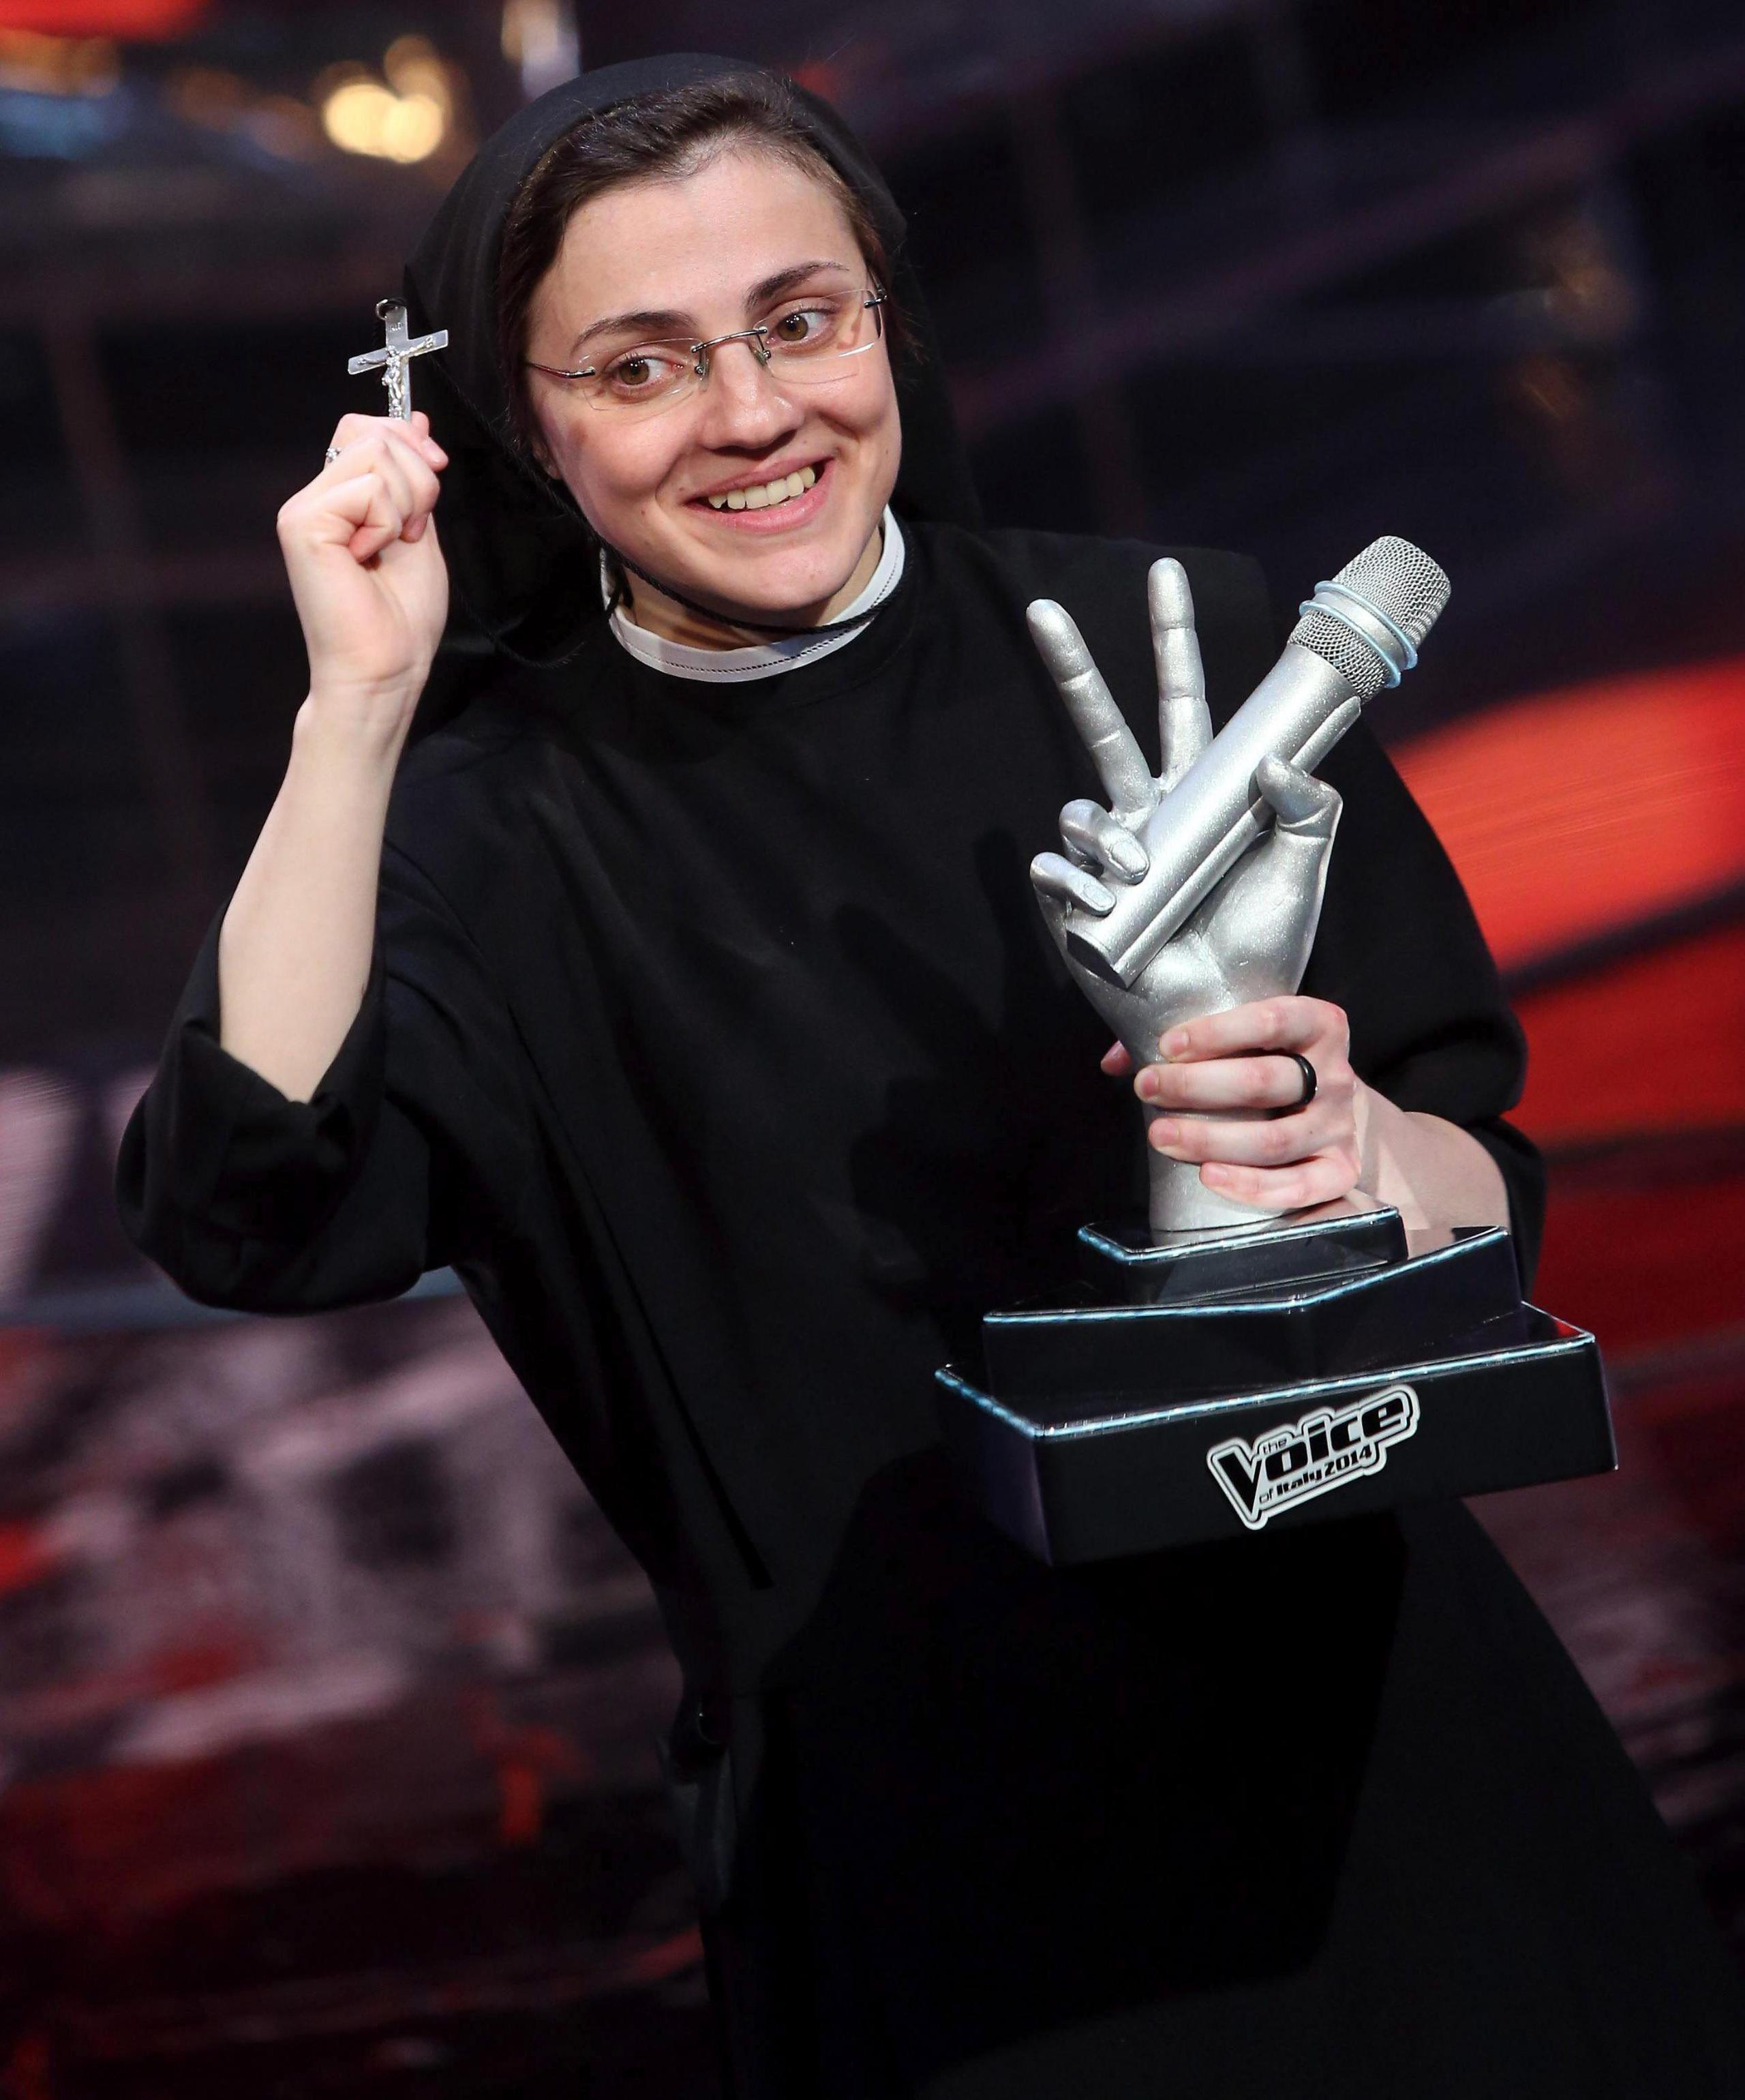 Fotografía de la monja Cristina Scuccia tras ganar la versión italiana del concurso "La Voz", el 5 de junio de 2014. EFE/Matteo Bazzi
